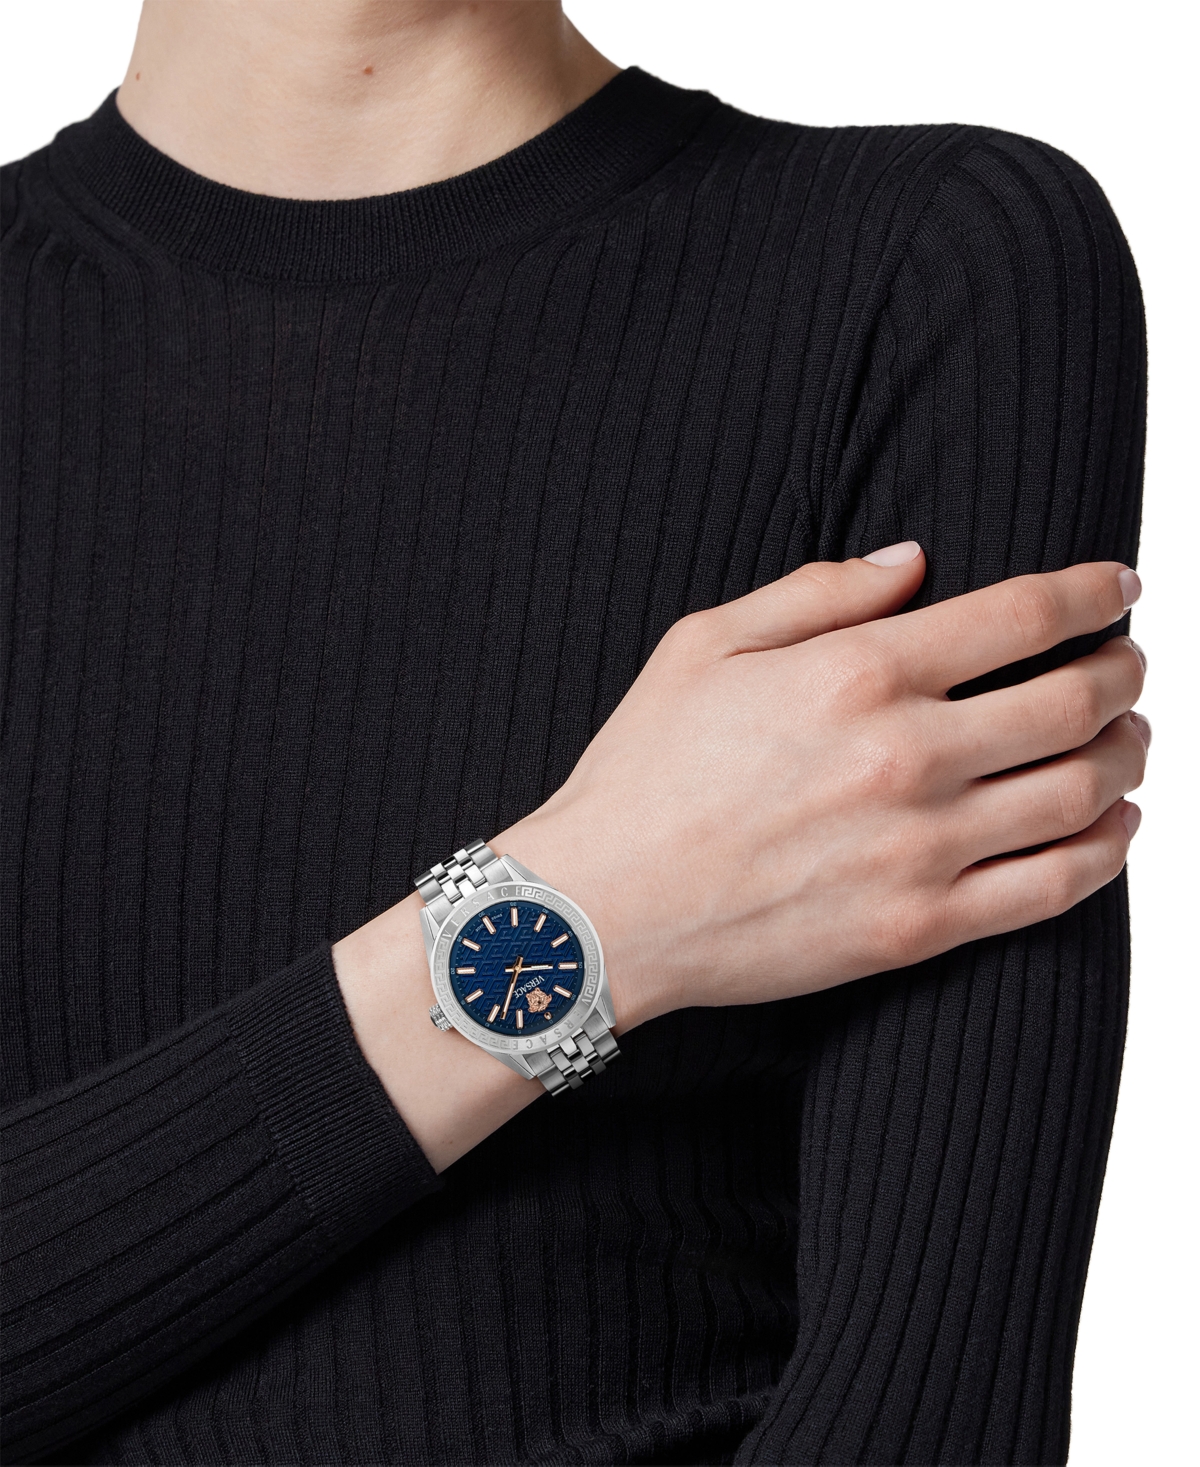 Shop Versace Women's Swiss Stainless Steel Bracelet Watch 36mm